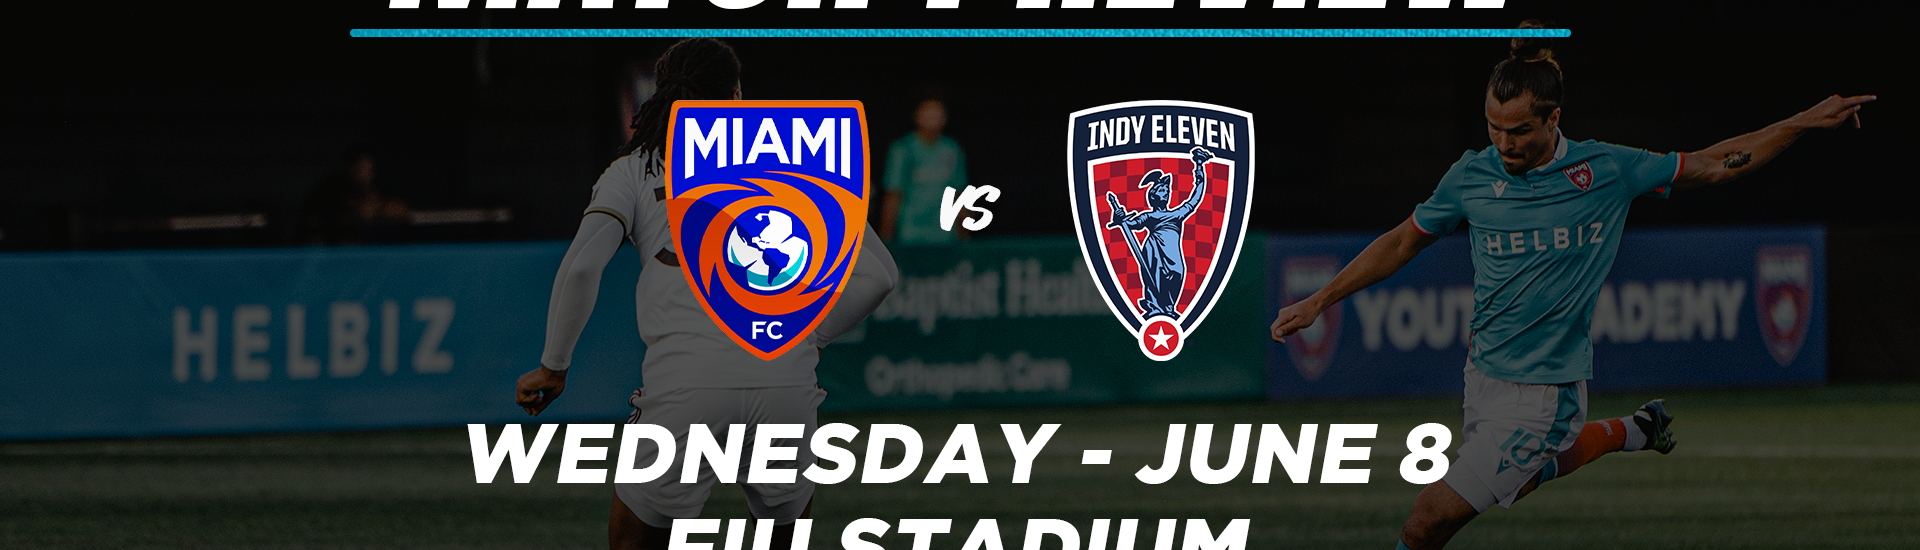 Miami FC vs. Indy Eleven Preview